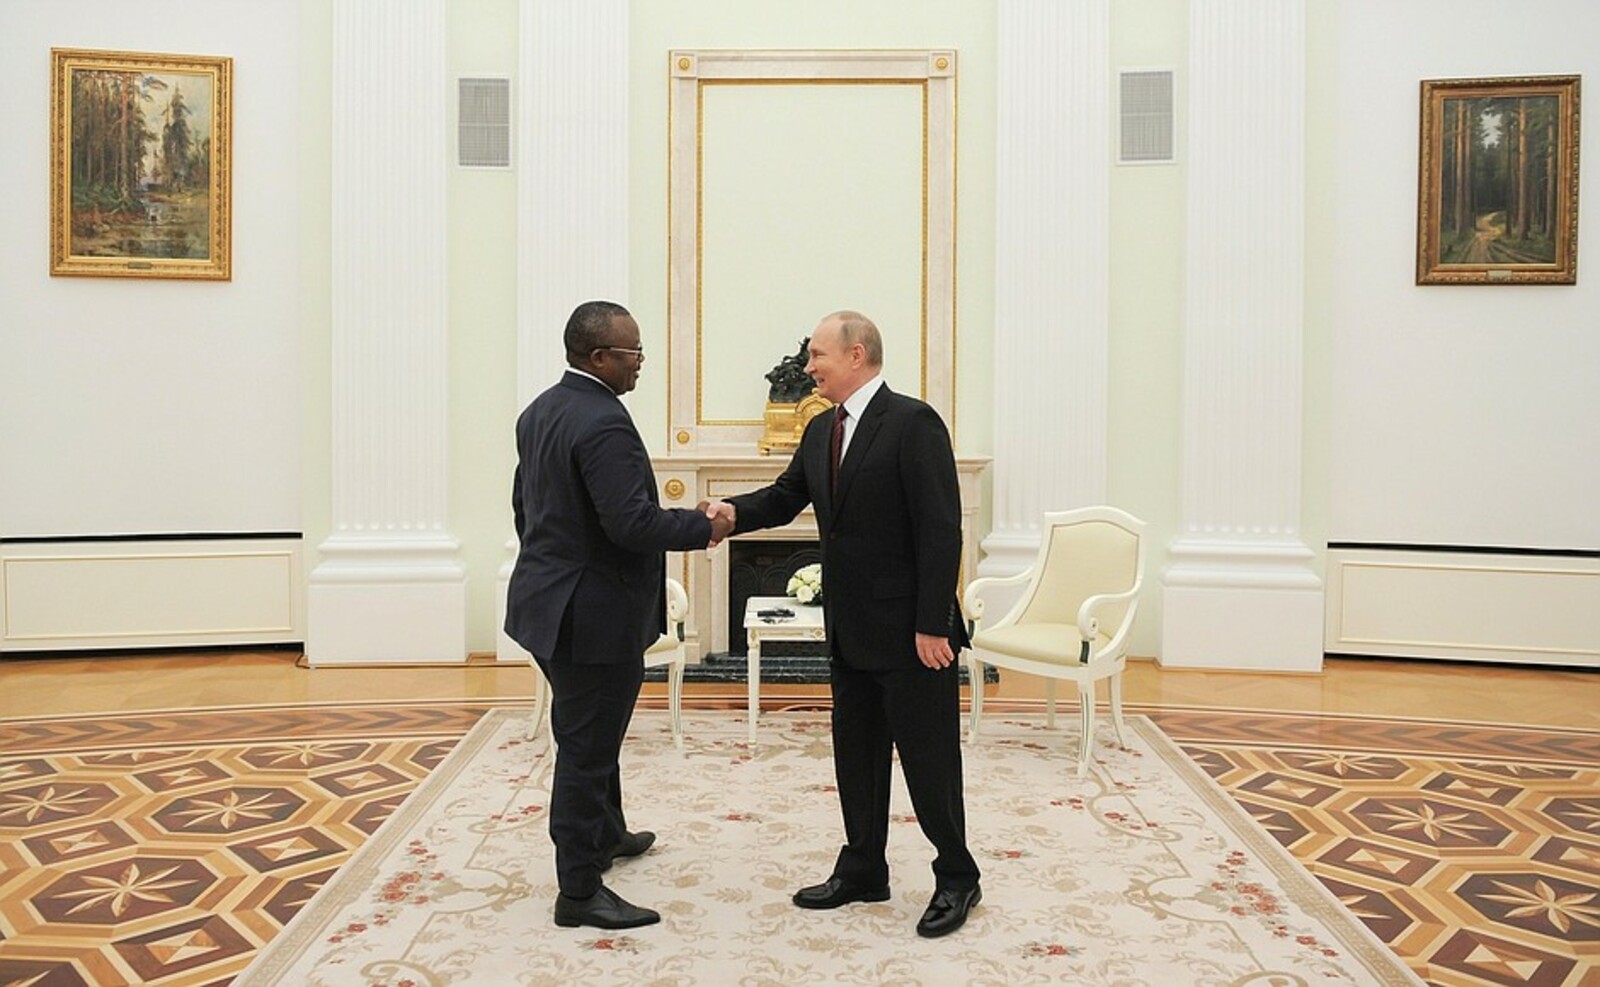 Владимир Путин встретился в Кремле с Президентом Республики Гвинея-Бисау, председателем Экономического сообщества стран Западной Африки (ЭКОВАС) Умару Сиссоку Эмбало